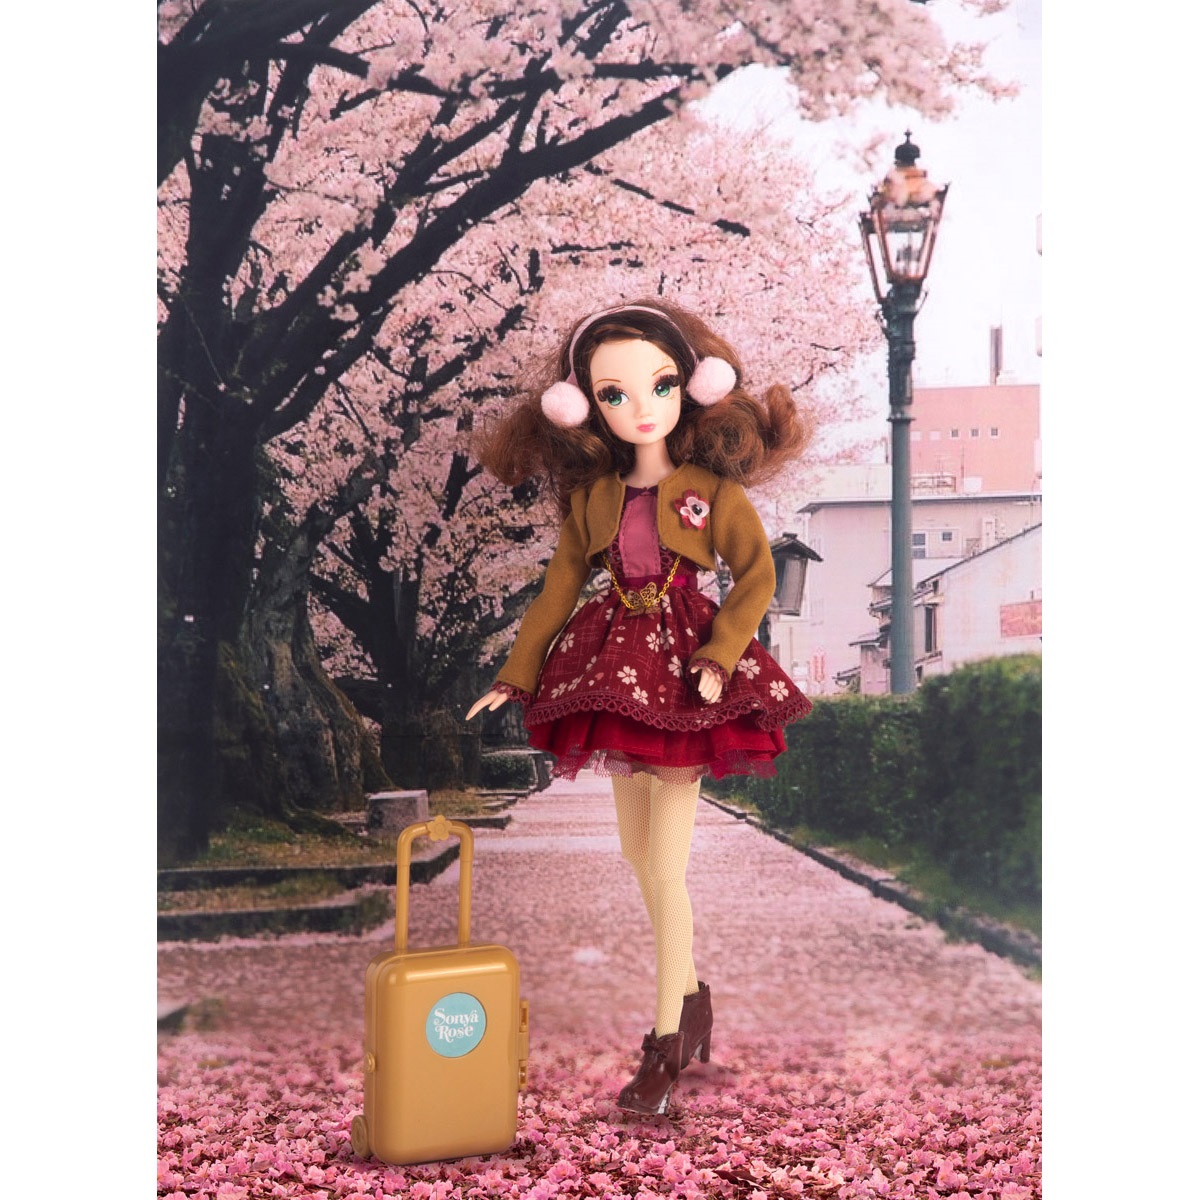 Кукла Sonya Rose, серия "Daily collection", Путешествие в Японию R4420N - фото 4